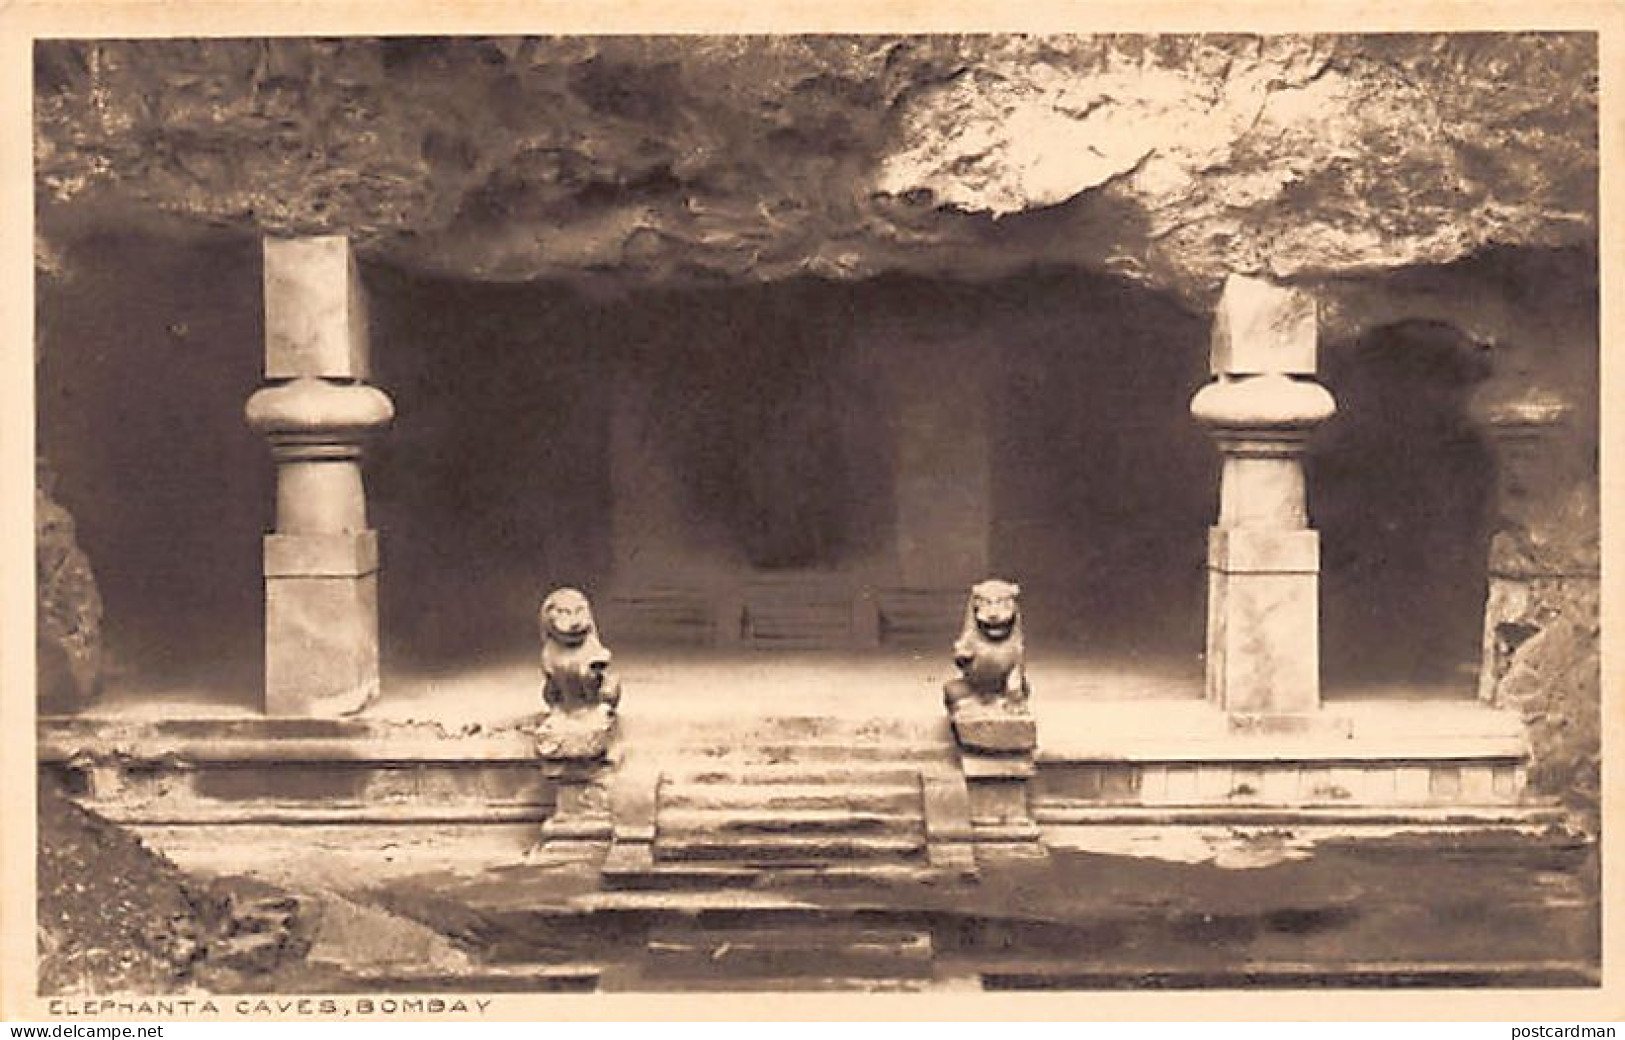 India - MUMBAI Bombay - Elephanta Caves - Publ. Thacker & Co. 21 - India